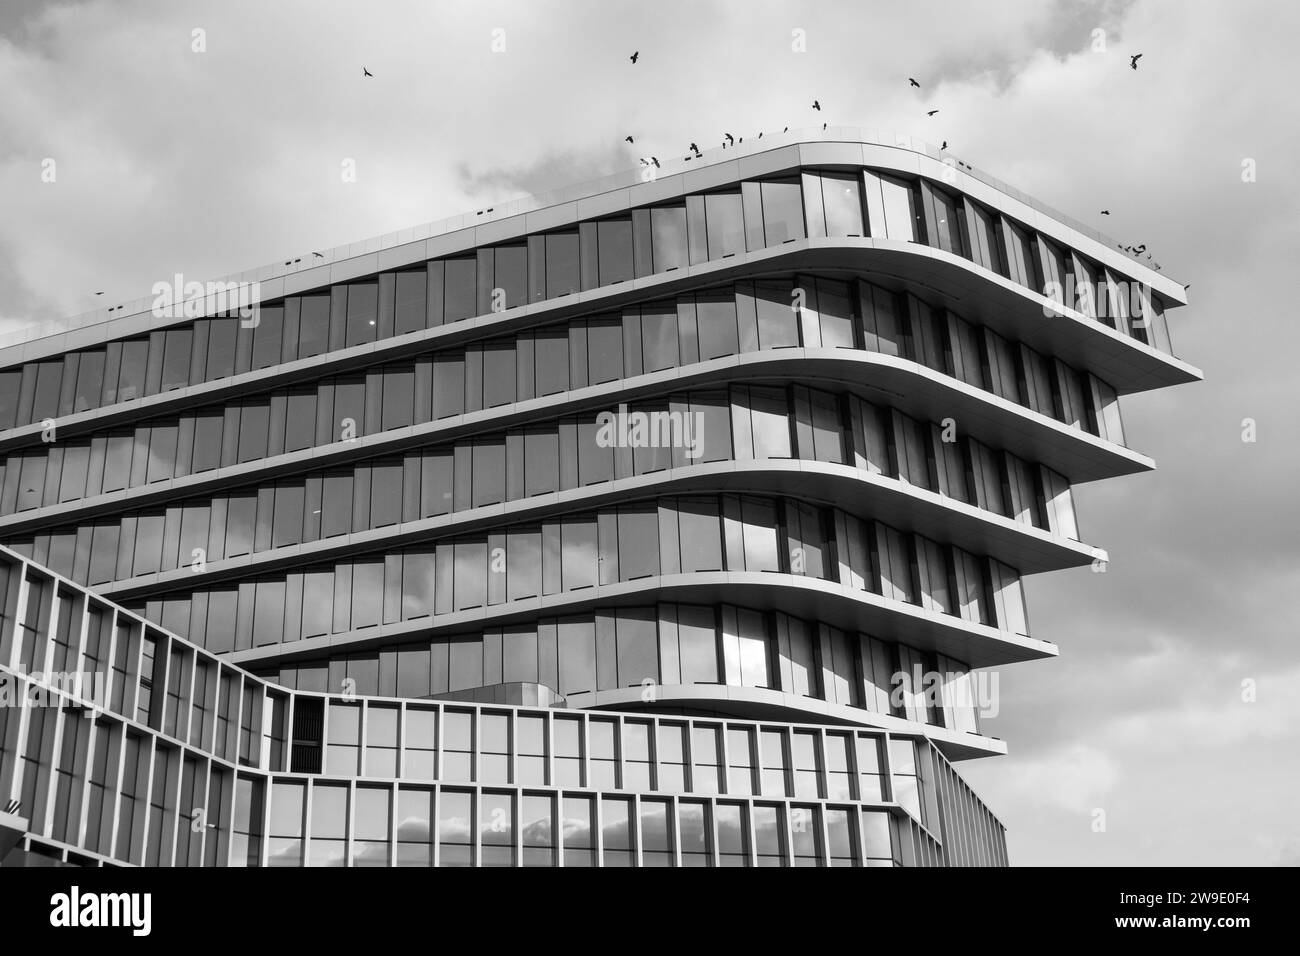 Das auffällige Schwarzweißbild eines geschichteten modernen Gebäudes unter bewölktem Himmel, Vögel im Flug, verstärken die urbane Szene. Stockfoto